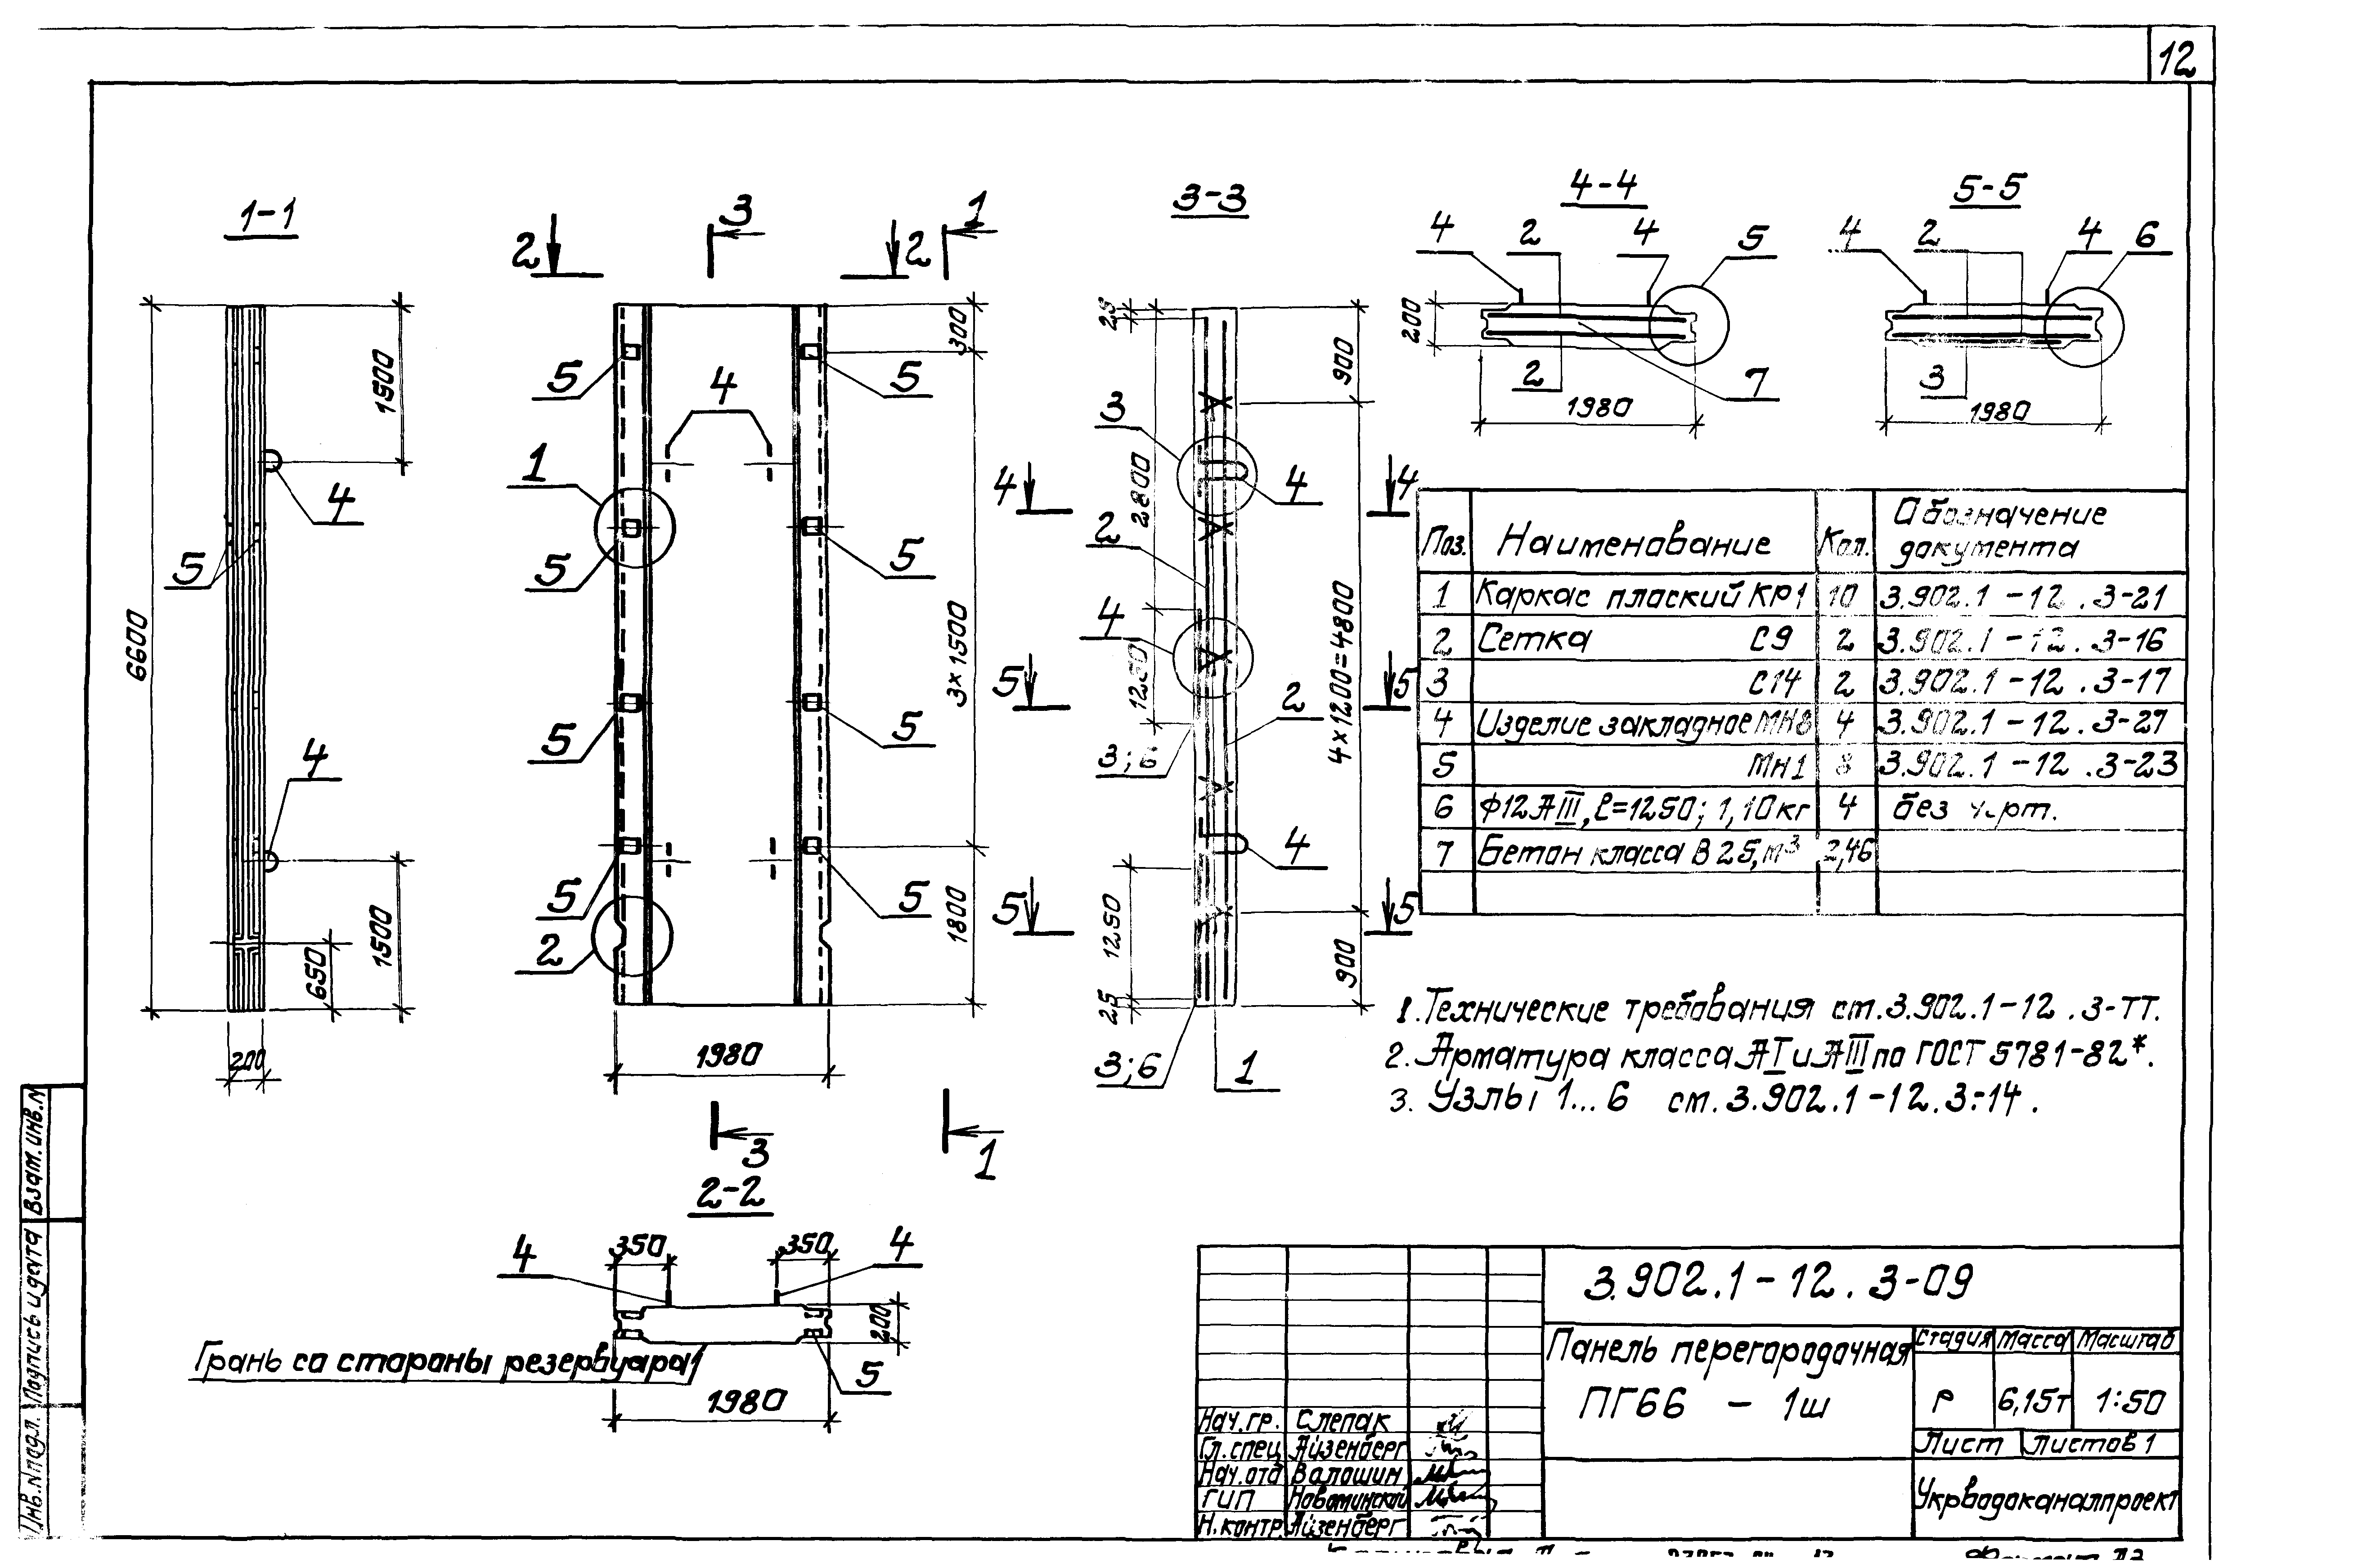 Панель перегородочная ПГ66-1-ш Серия 3.902.1-12, вып.3